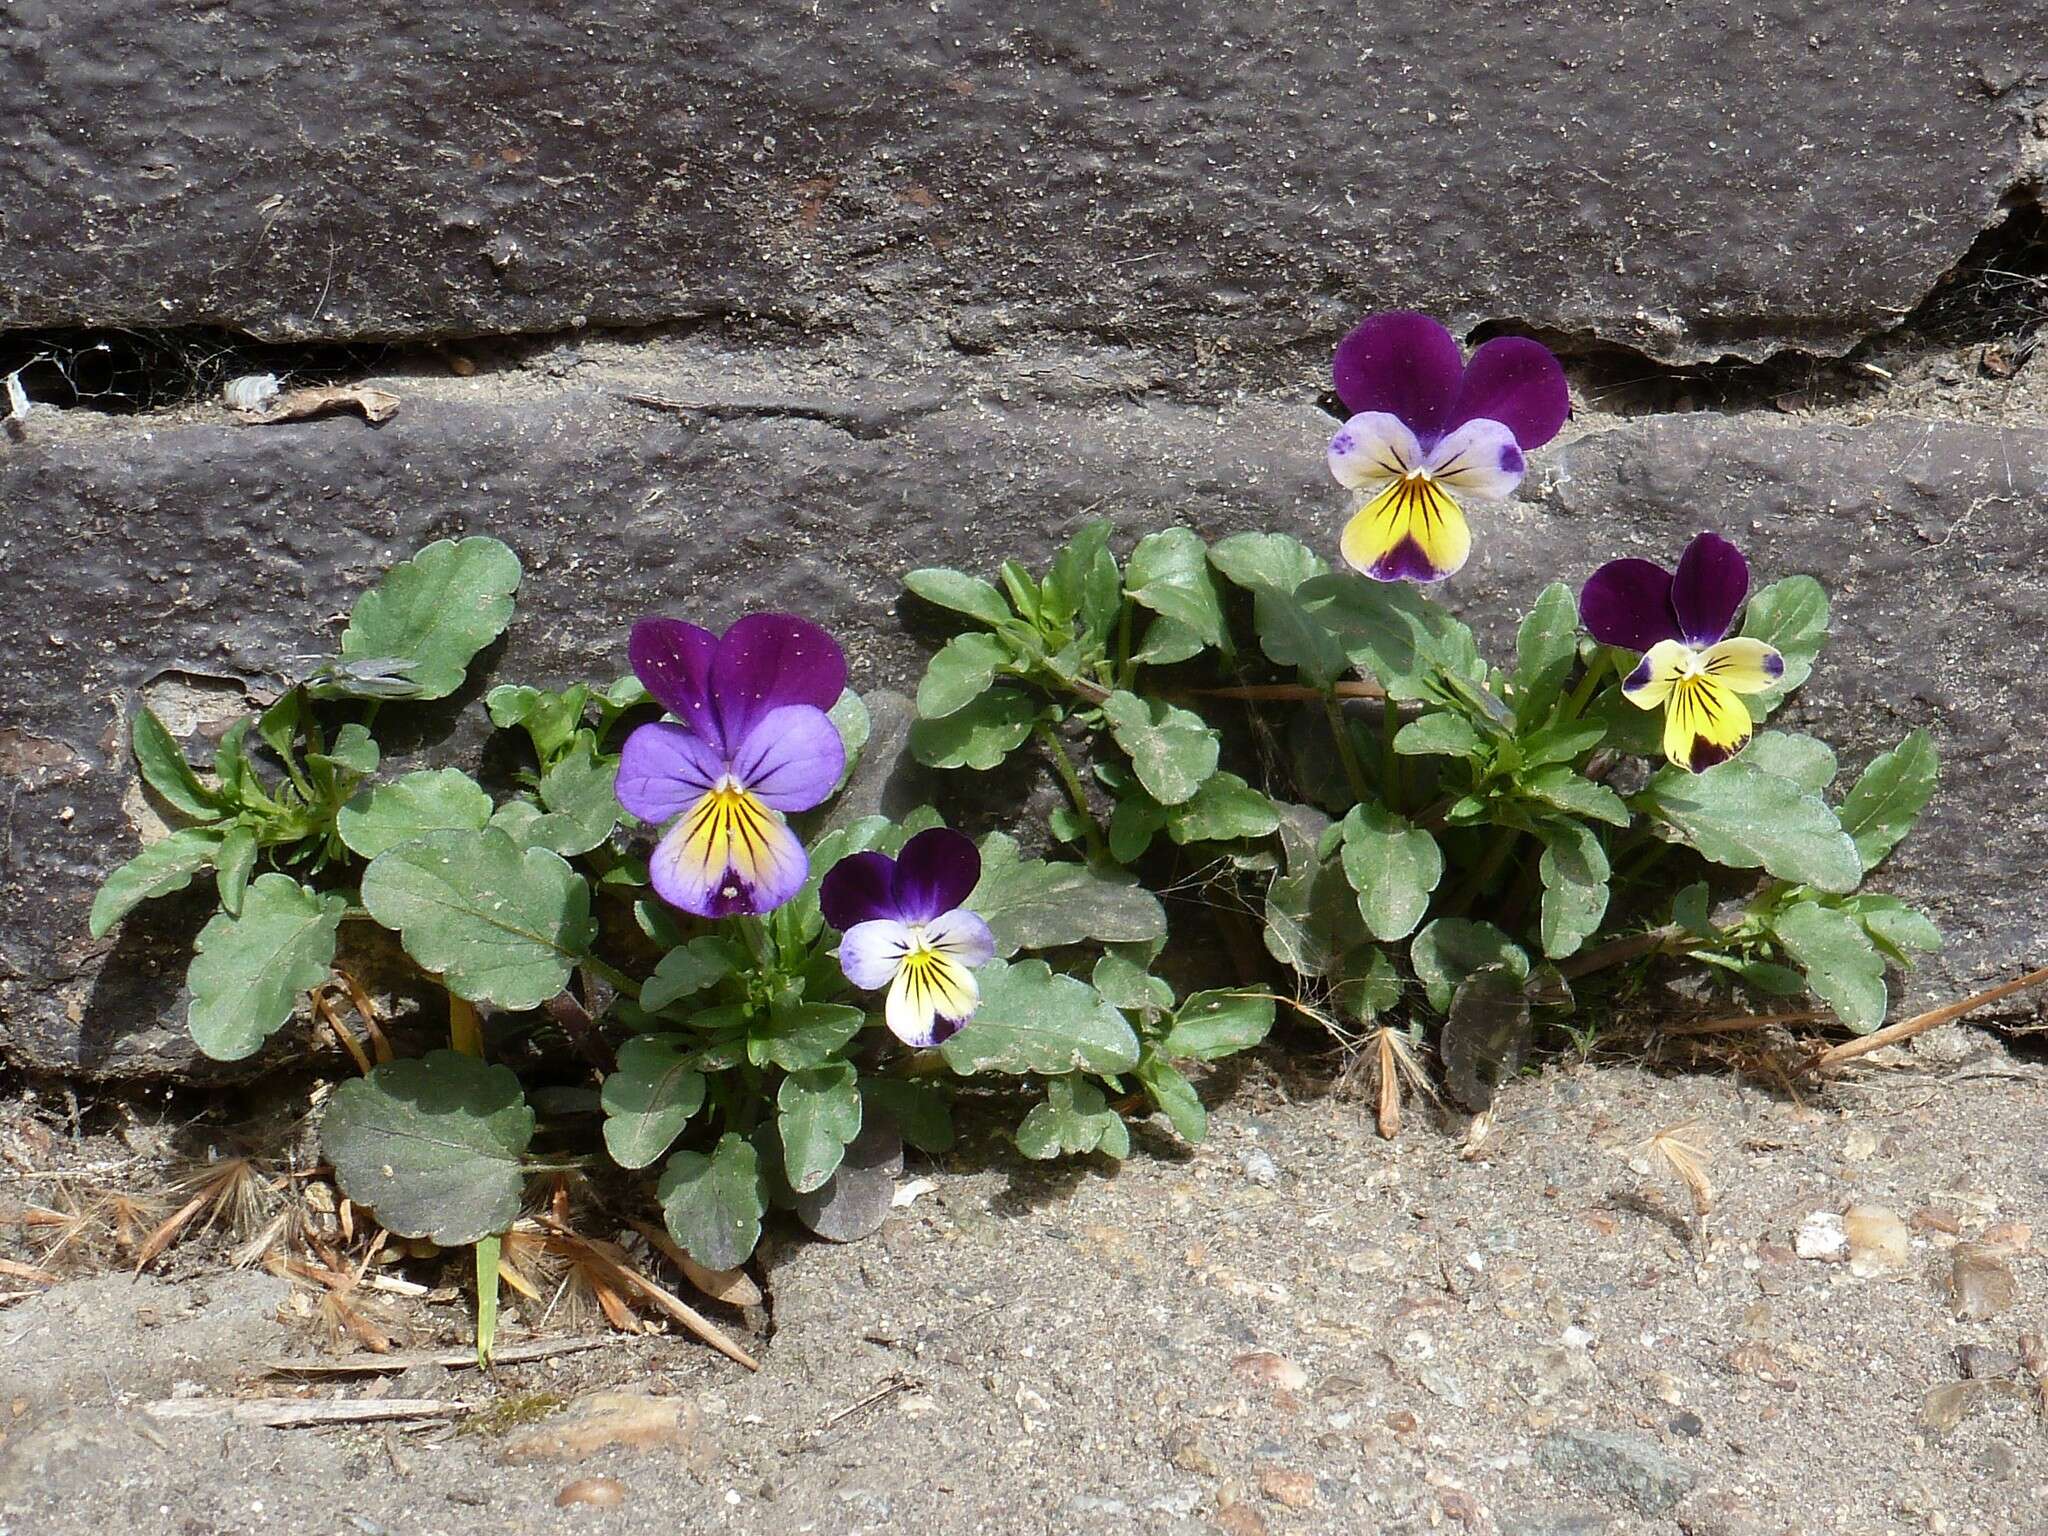 Image of hybrid violet